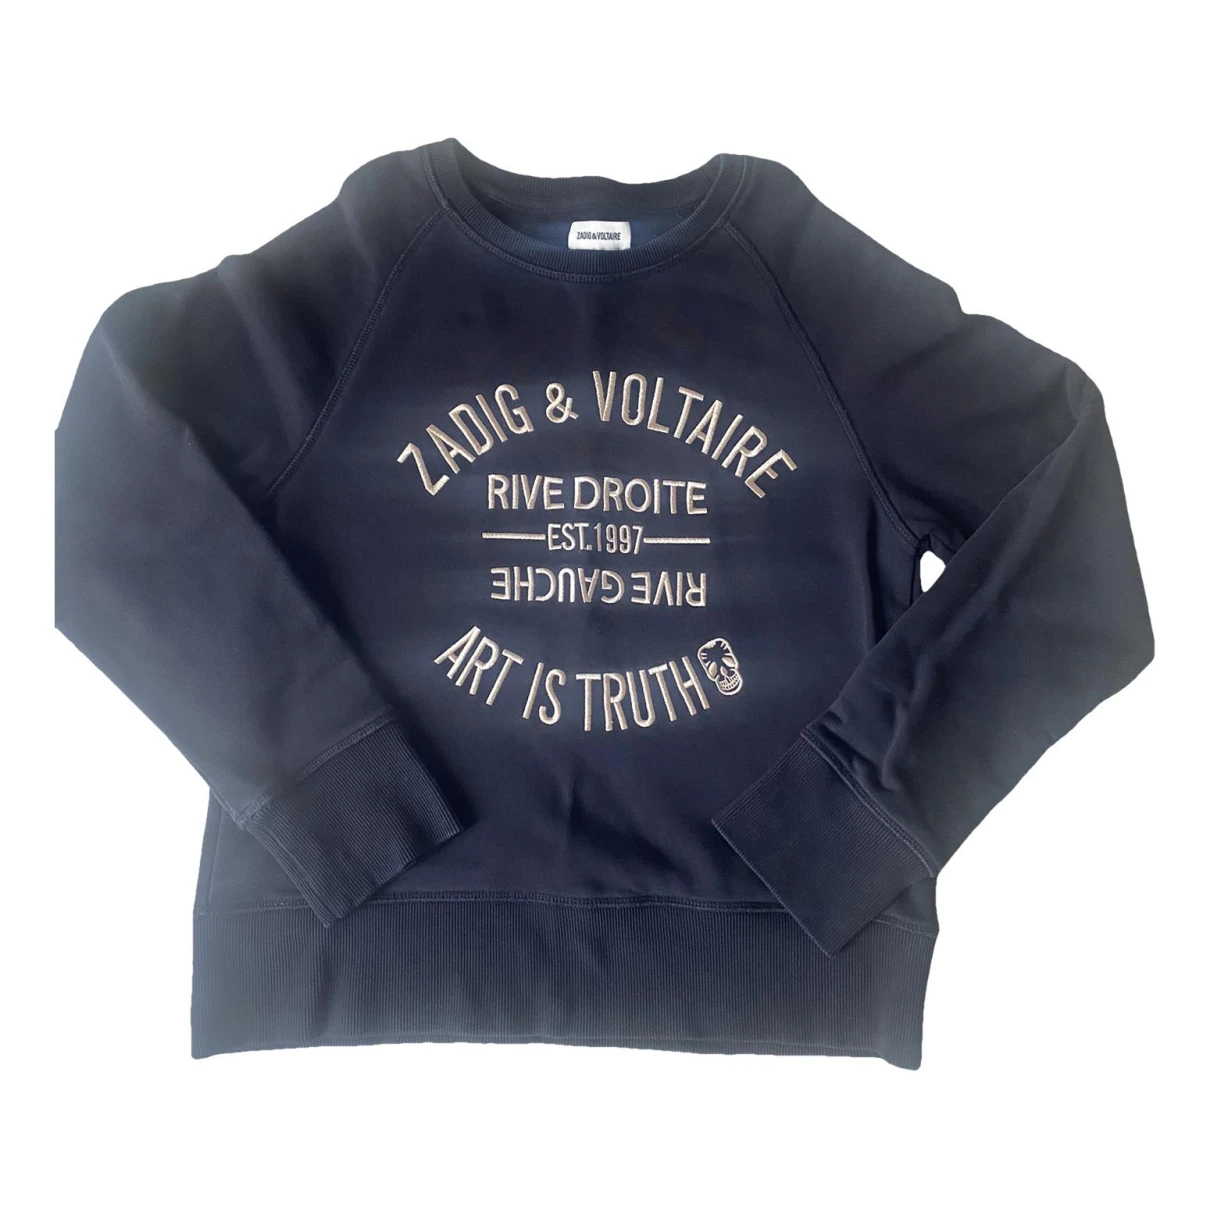 Pre-owned Zadig & Voltaire Sweatshirt In Black